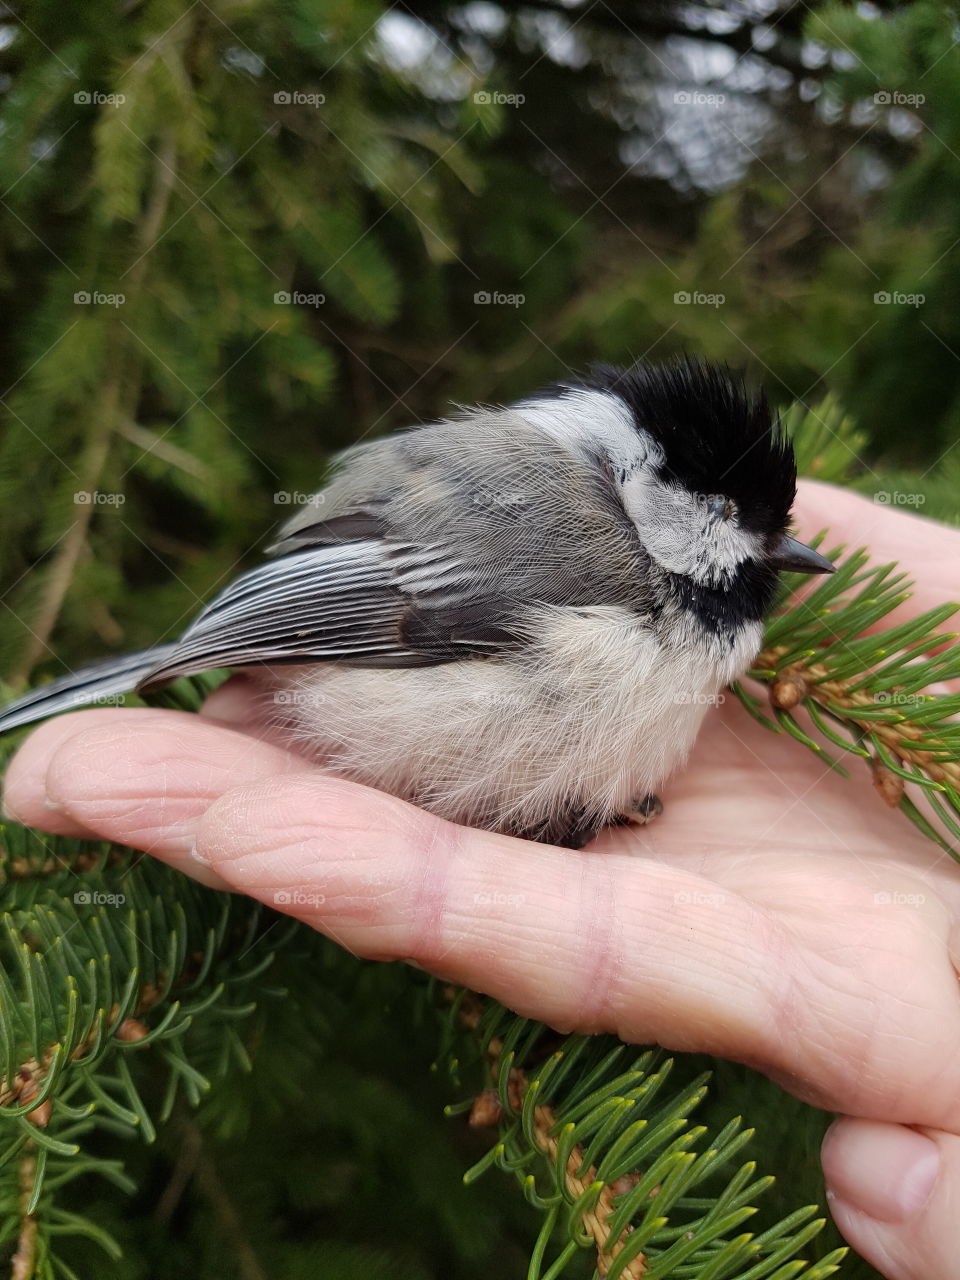 Tiny bird